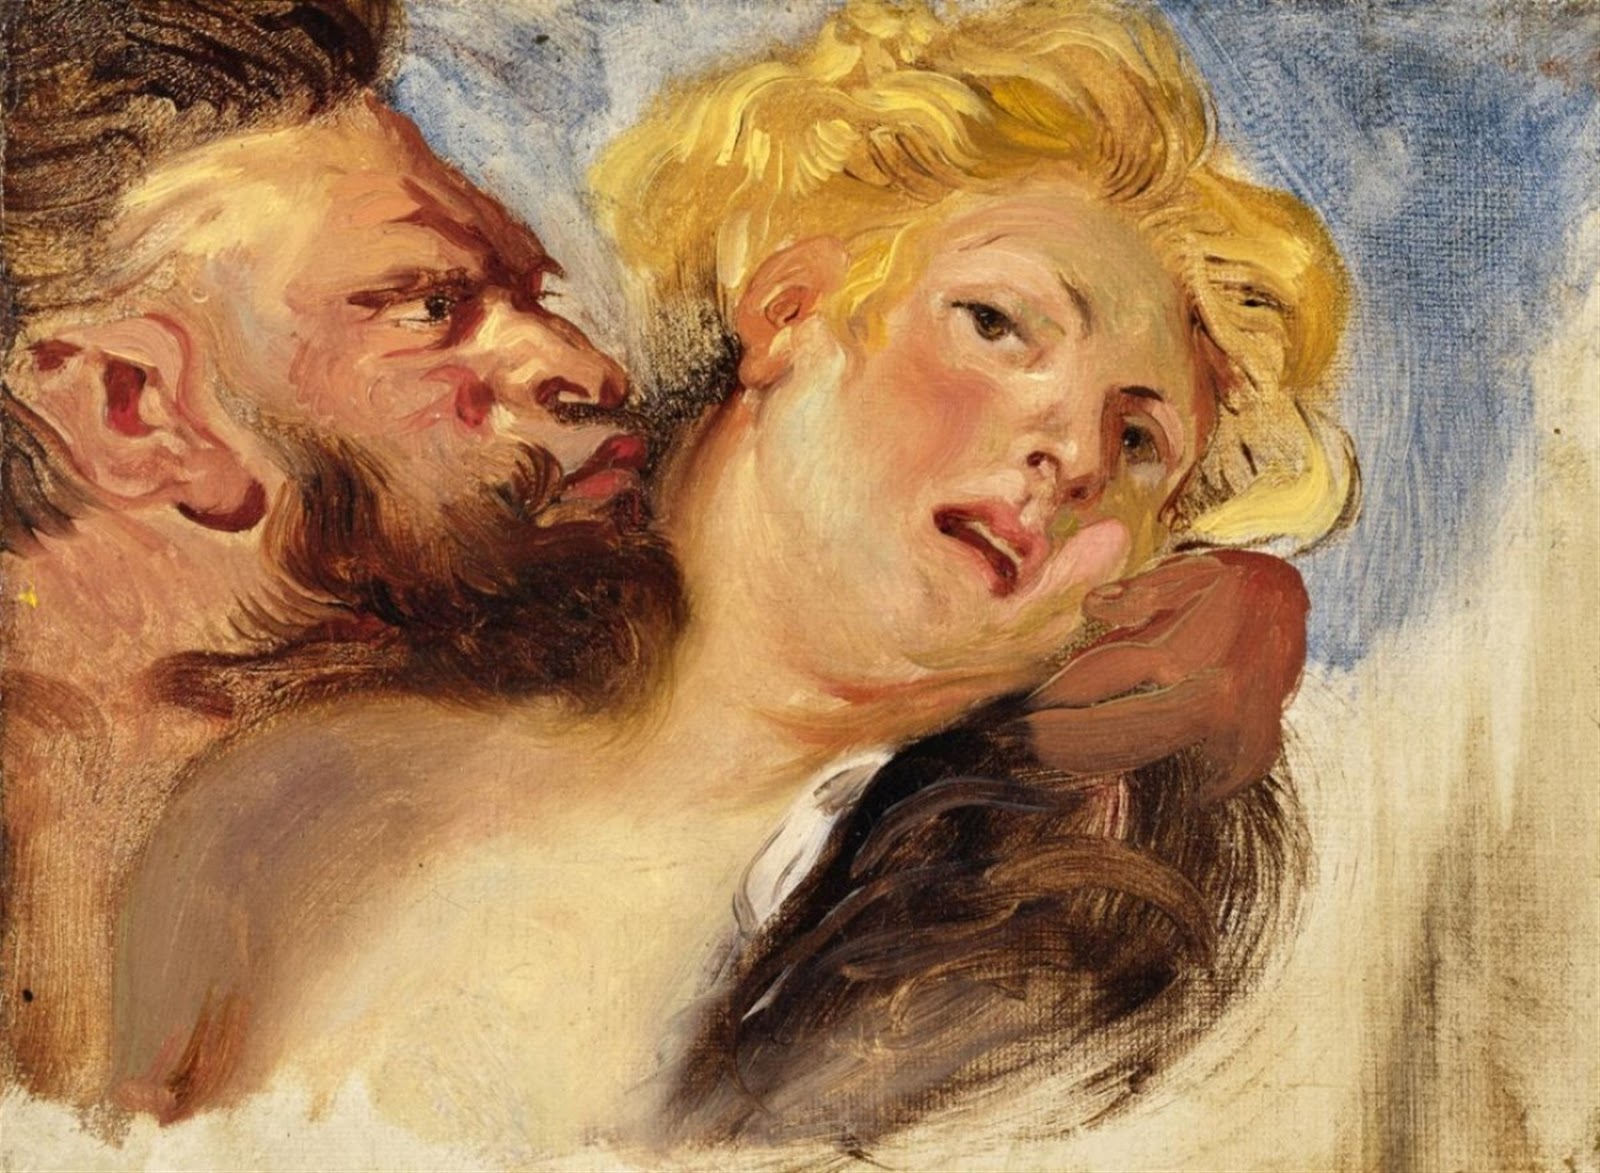 Eugene+Delacroix-1798-1863 (198).jpg